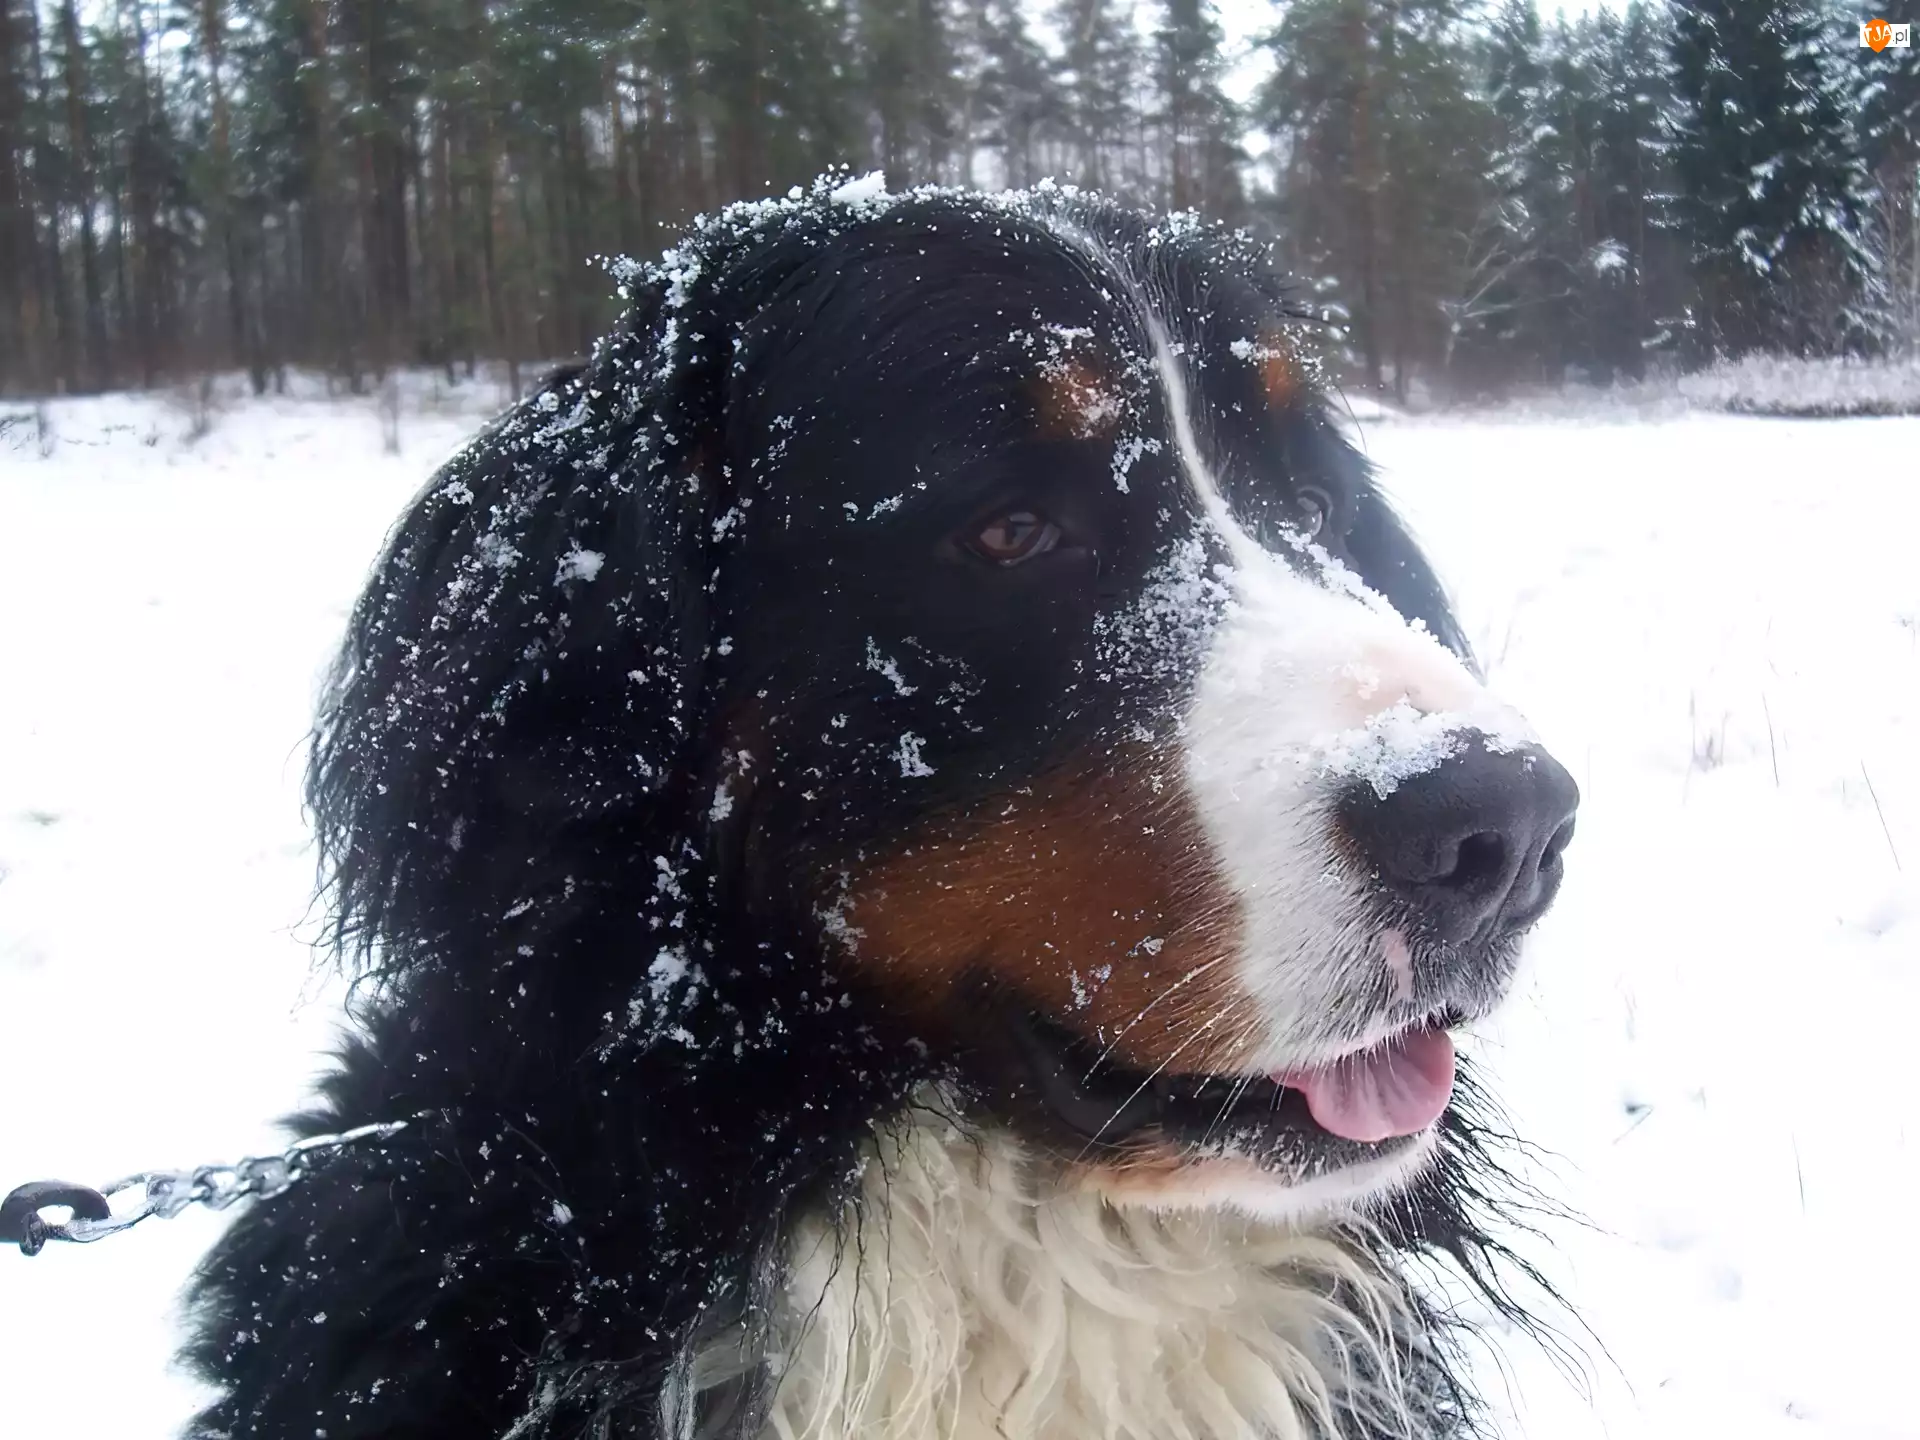 Berneński pies pasterski, śnieg